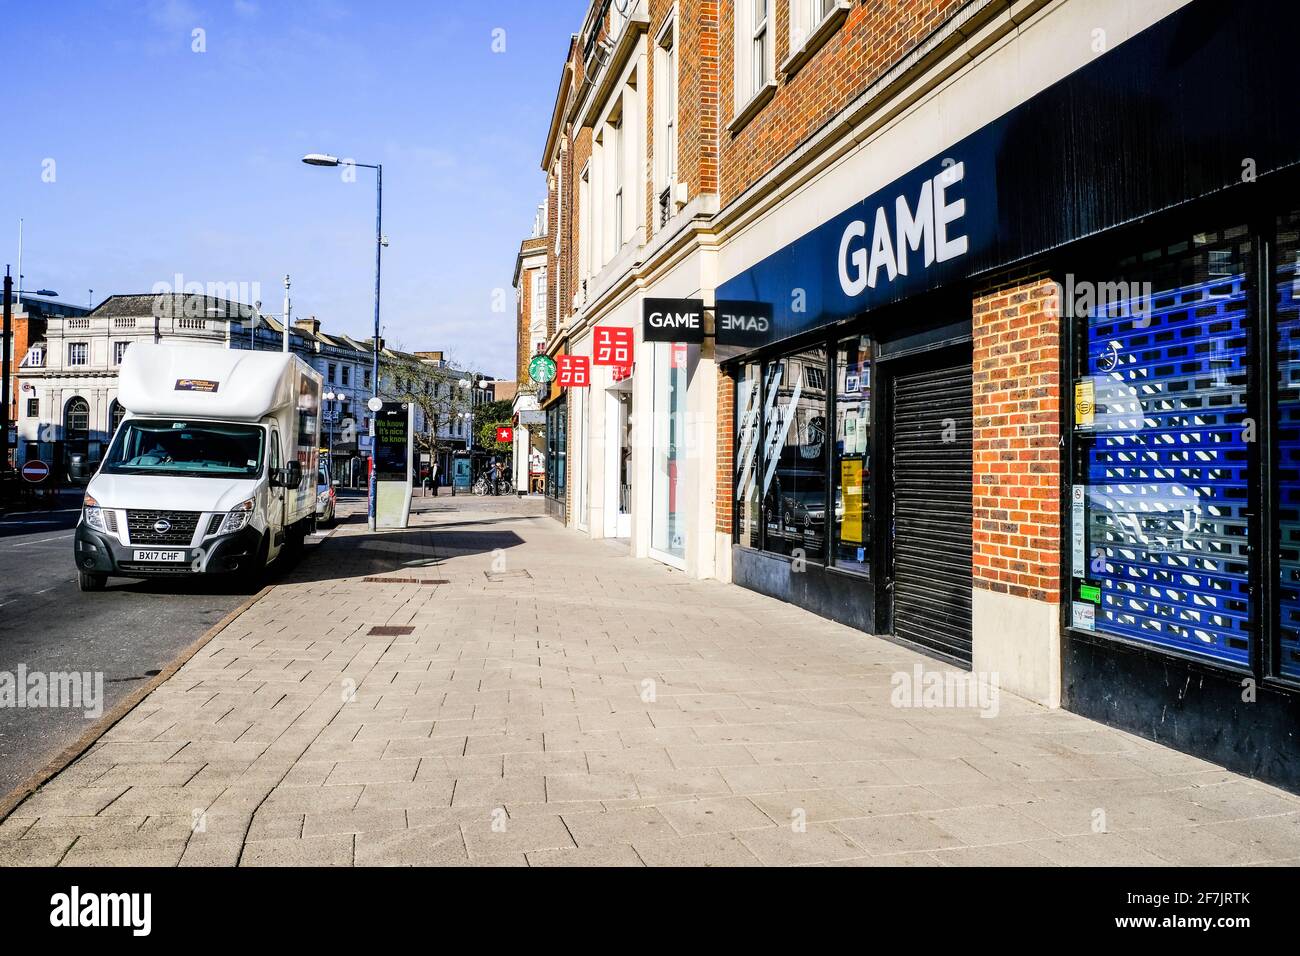 Kingston, Londres, Royaume-Uni, avril 7 2021, High Street Branch of Game Computer Gaming Shop ou Store fermé pendant le verrouillage du coronavirus Covid-19 Banque D'Images